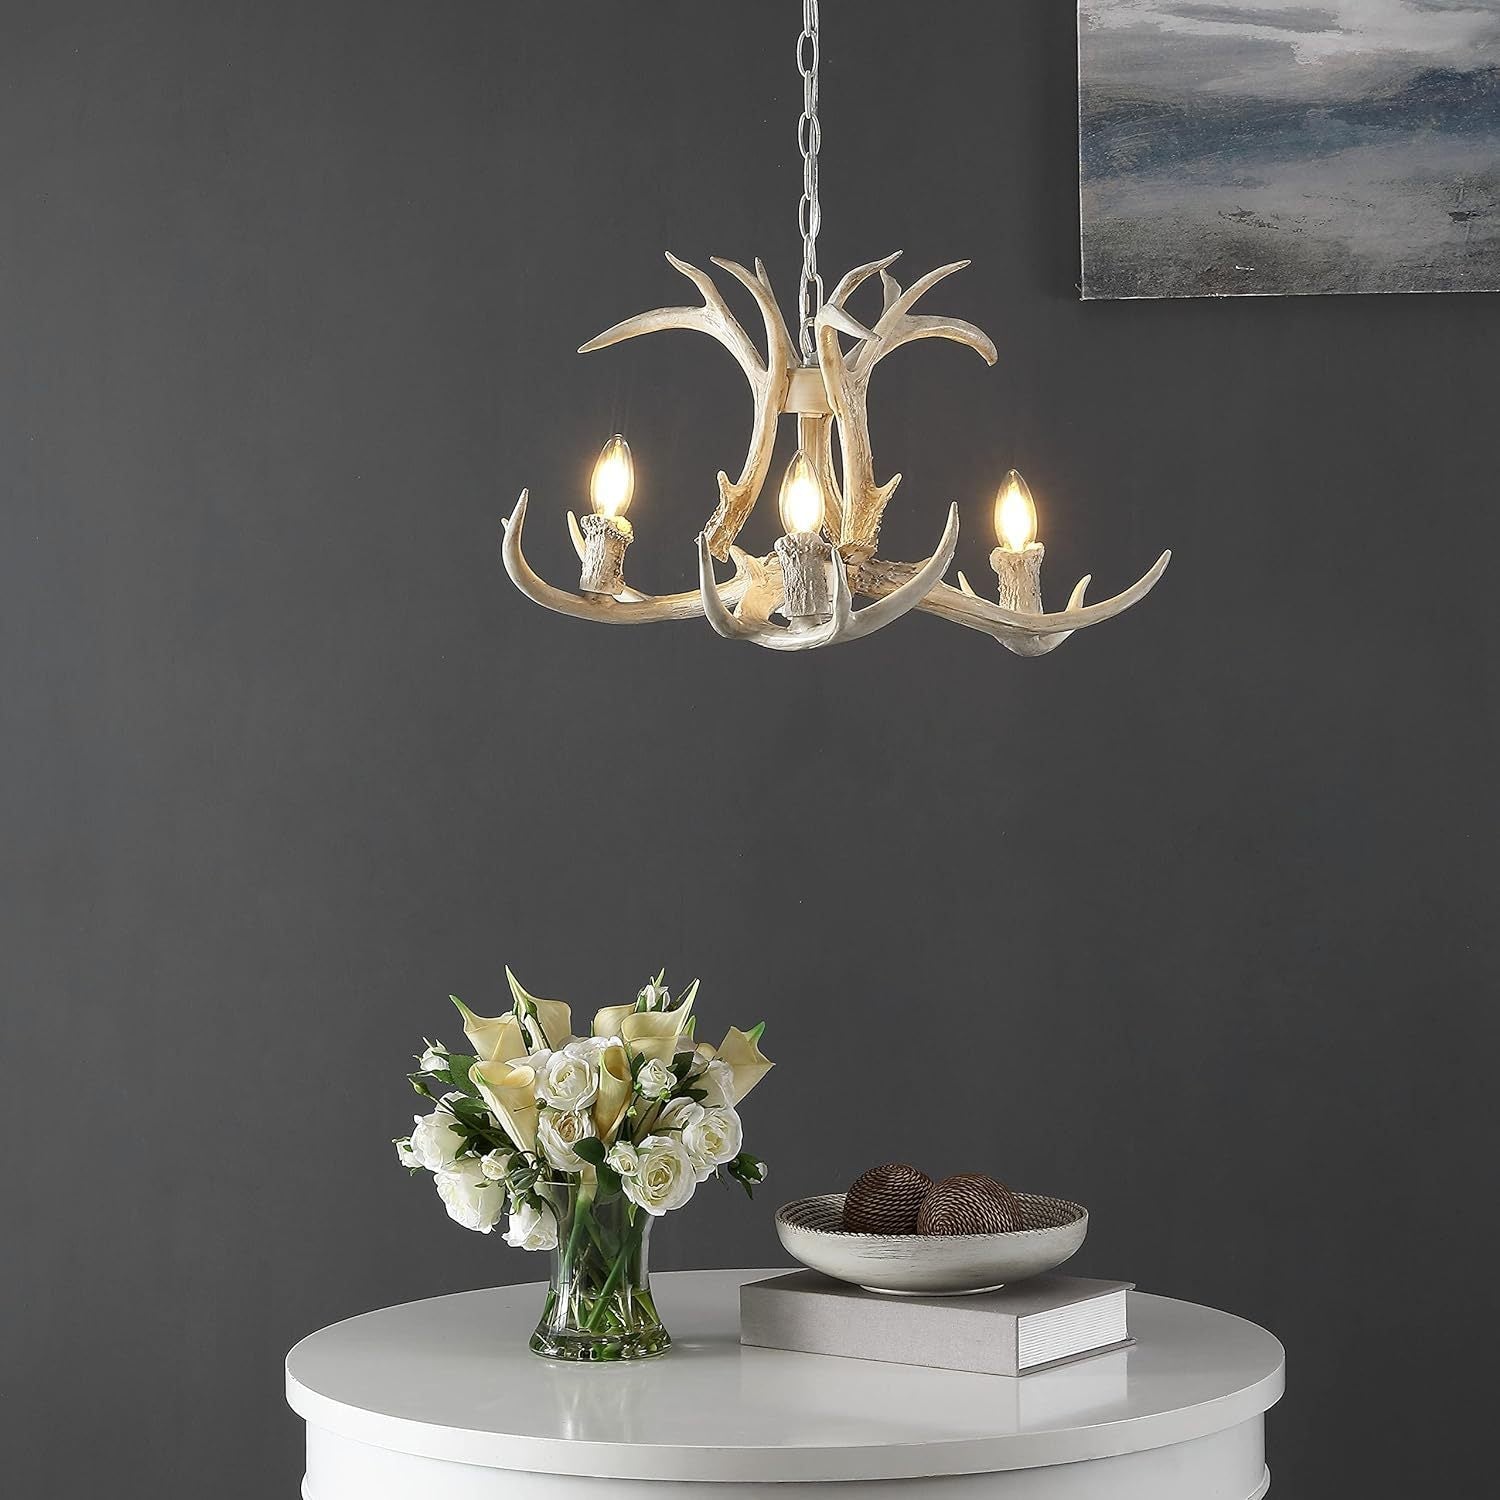 Silva Retro LED Pendant Light White Metal Resin Dining Room/Bedroom